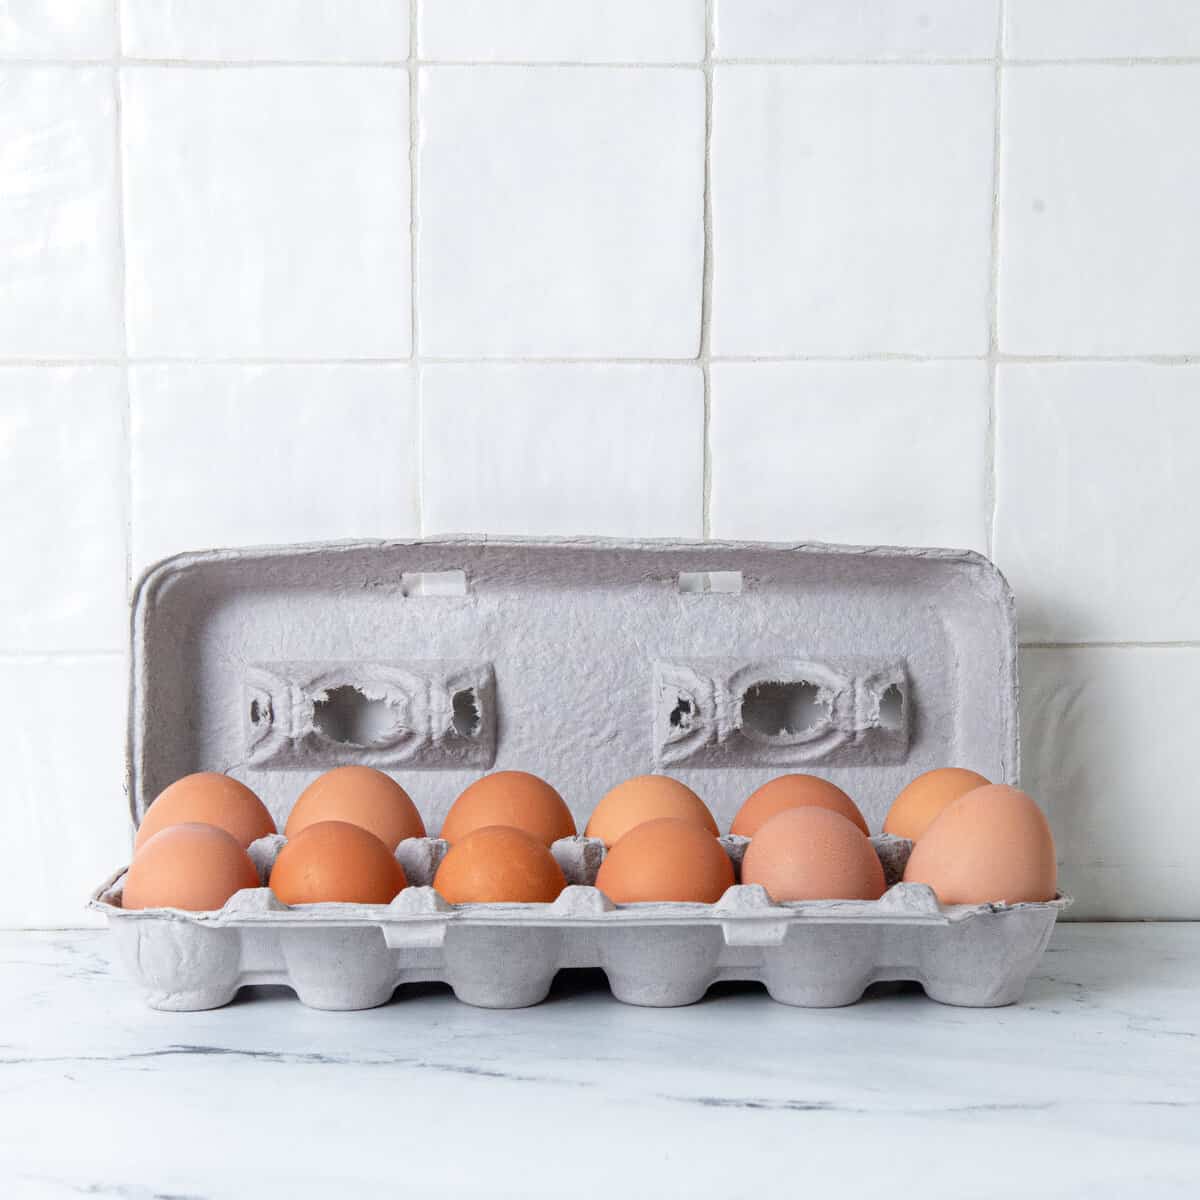 12 hardboiled eggs stored in grey egg carton.